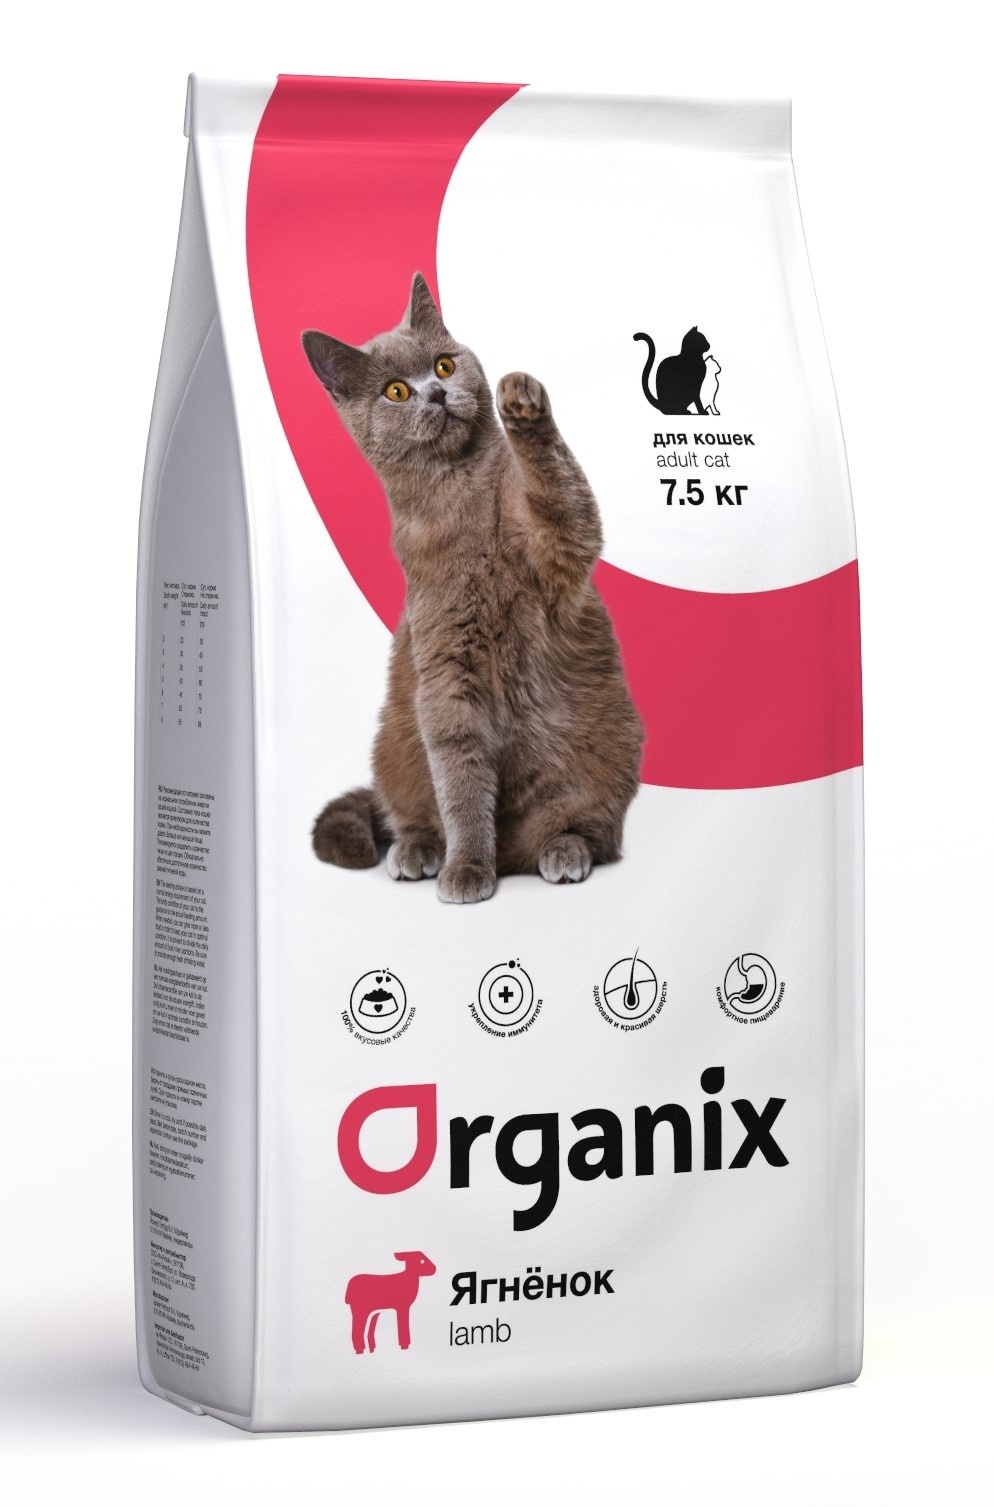 фото Сухой корм для кошек organix, ягненок, 7.5кг